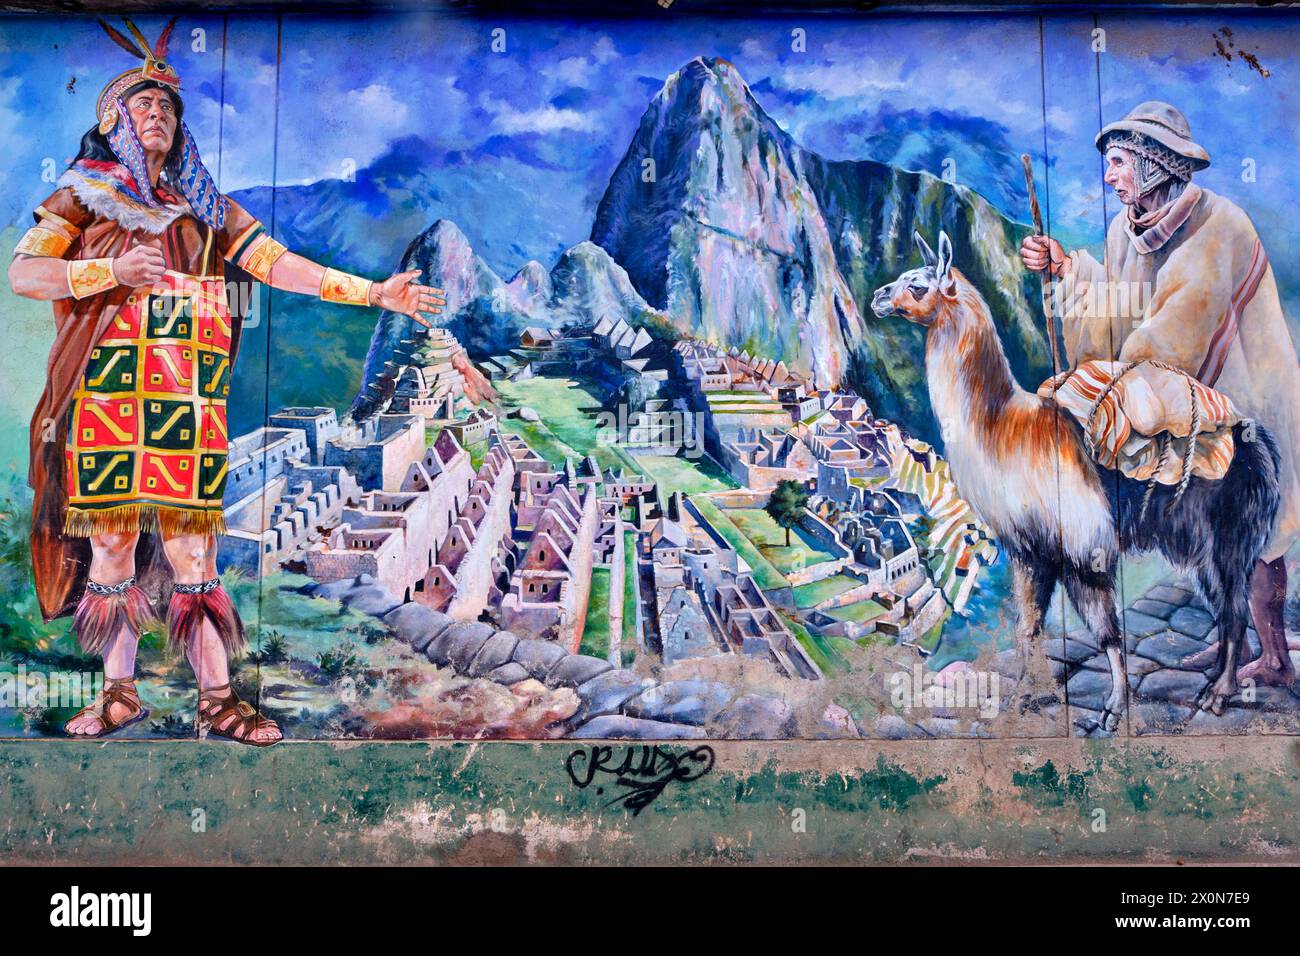 Pérou, province de Cuzco, Cuzco, classé au patrimoine mondial de l'UNESCO, place Ovalo Pachacutec, murale représentant Machu Picchu Banque D'Images